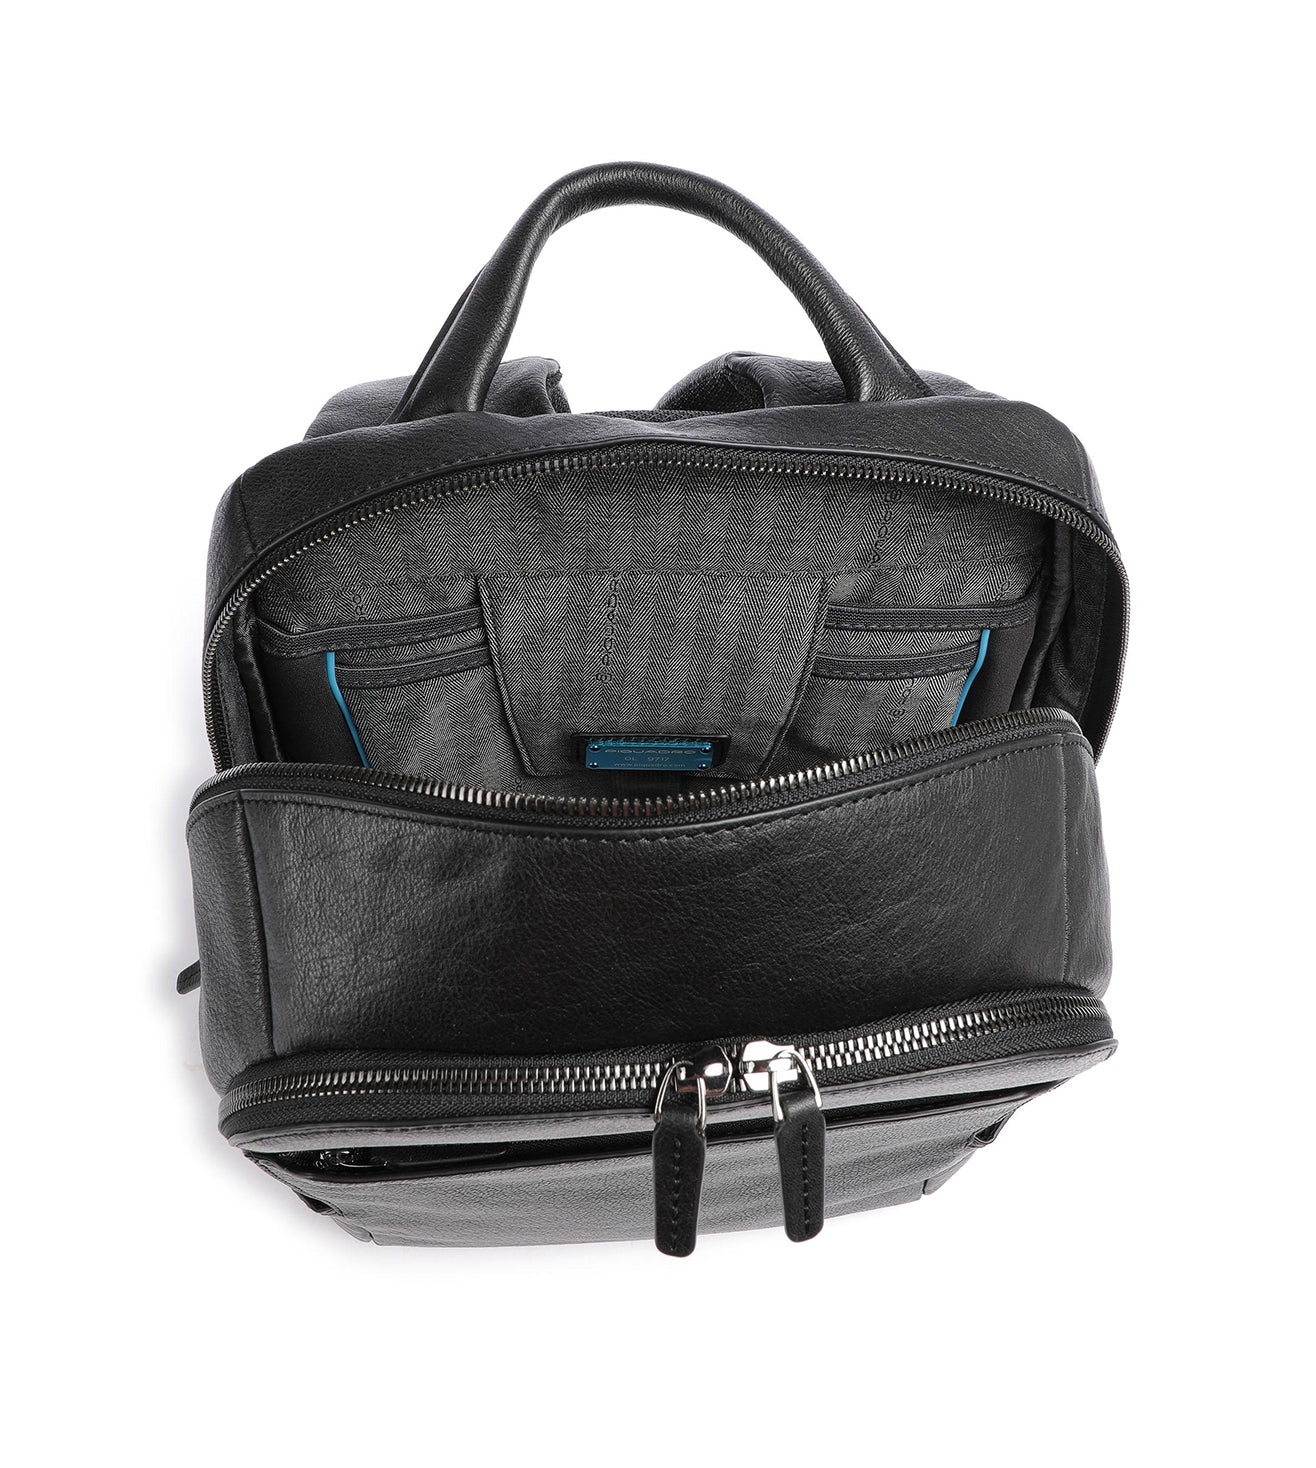 Piquadro Black Square Men's Black Laptop Backpack